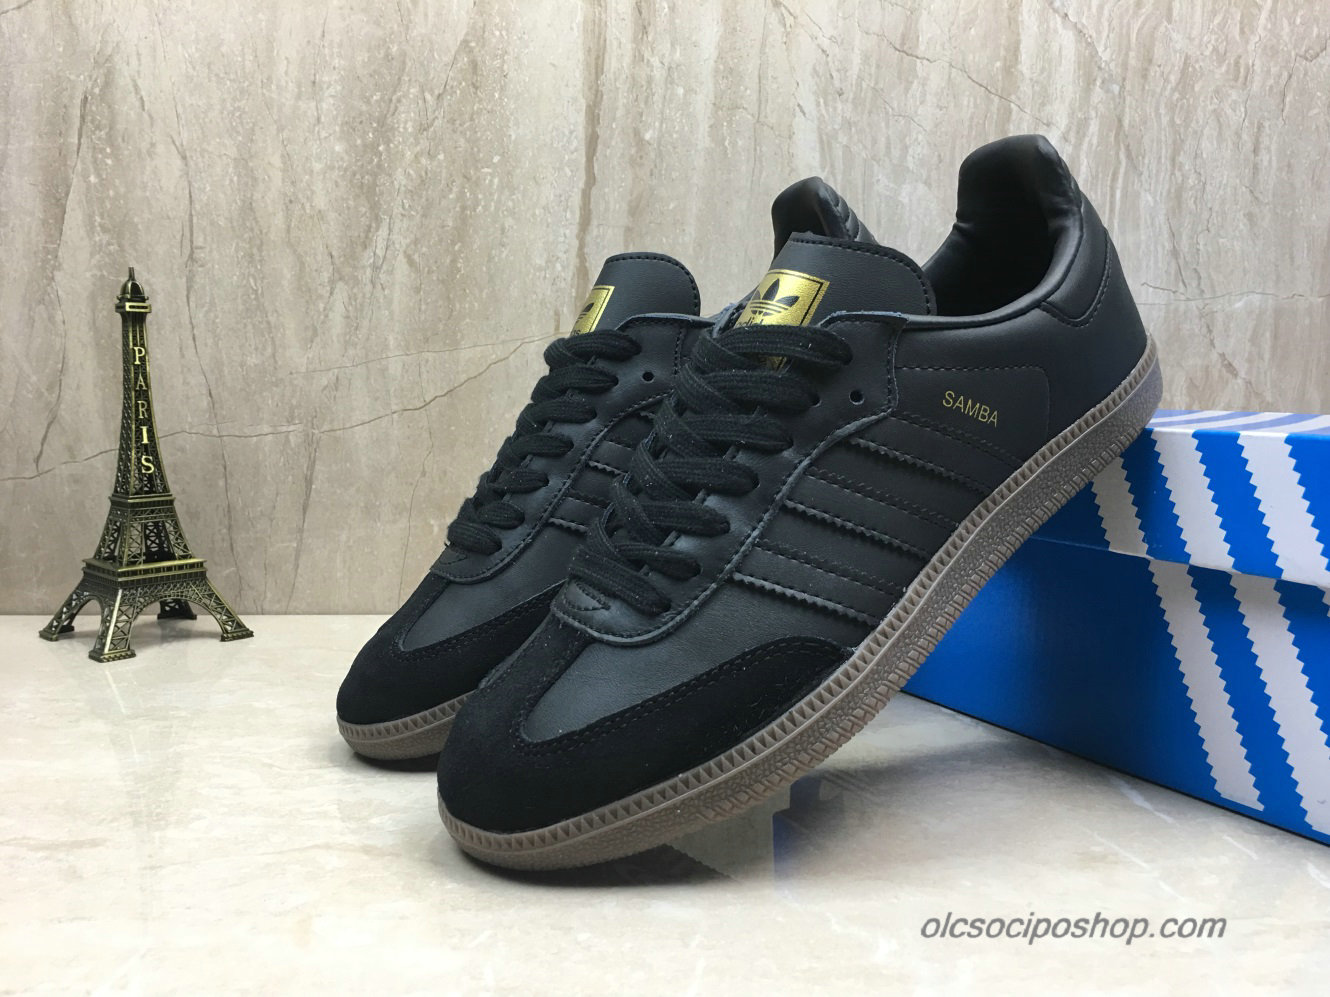 Adidas Samba OG Fekete/Arany Cipők (B75805) - Kattintásra bezárul